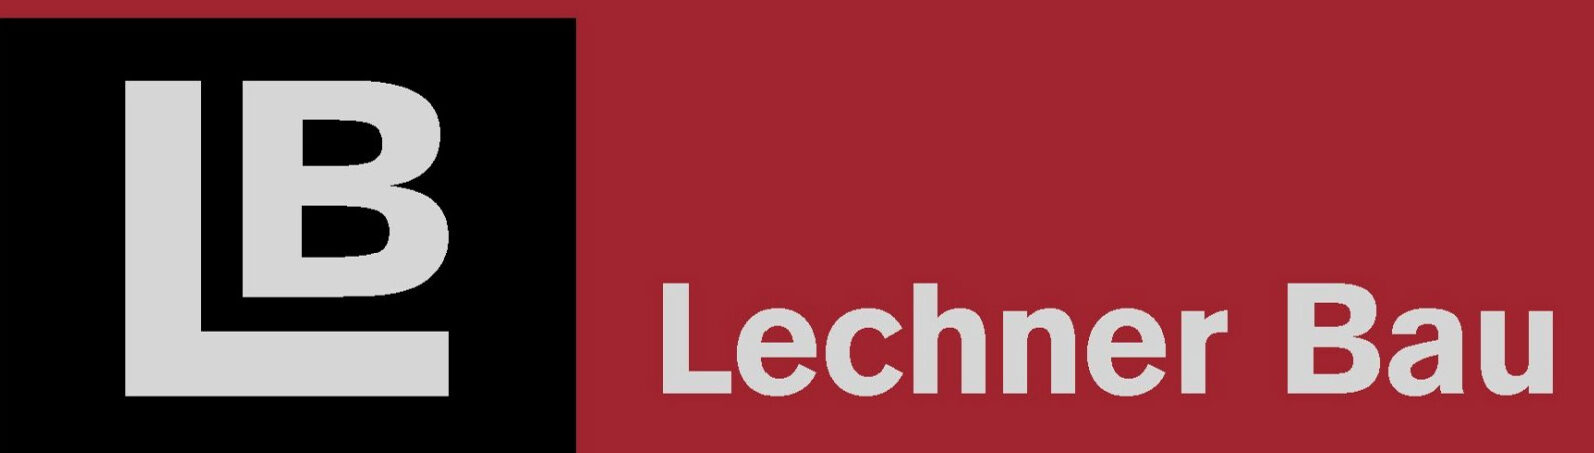 Lechner Bau GmbH